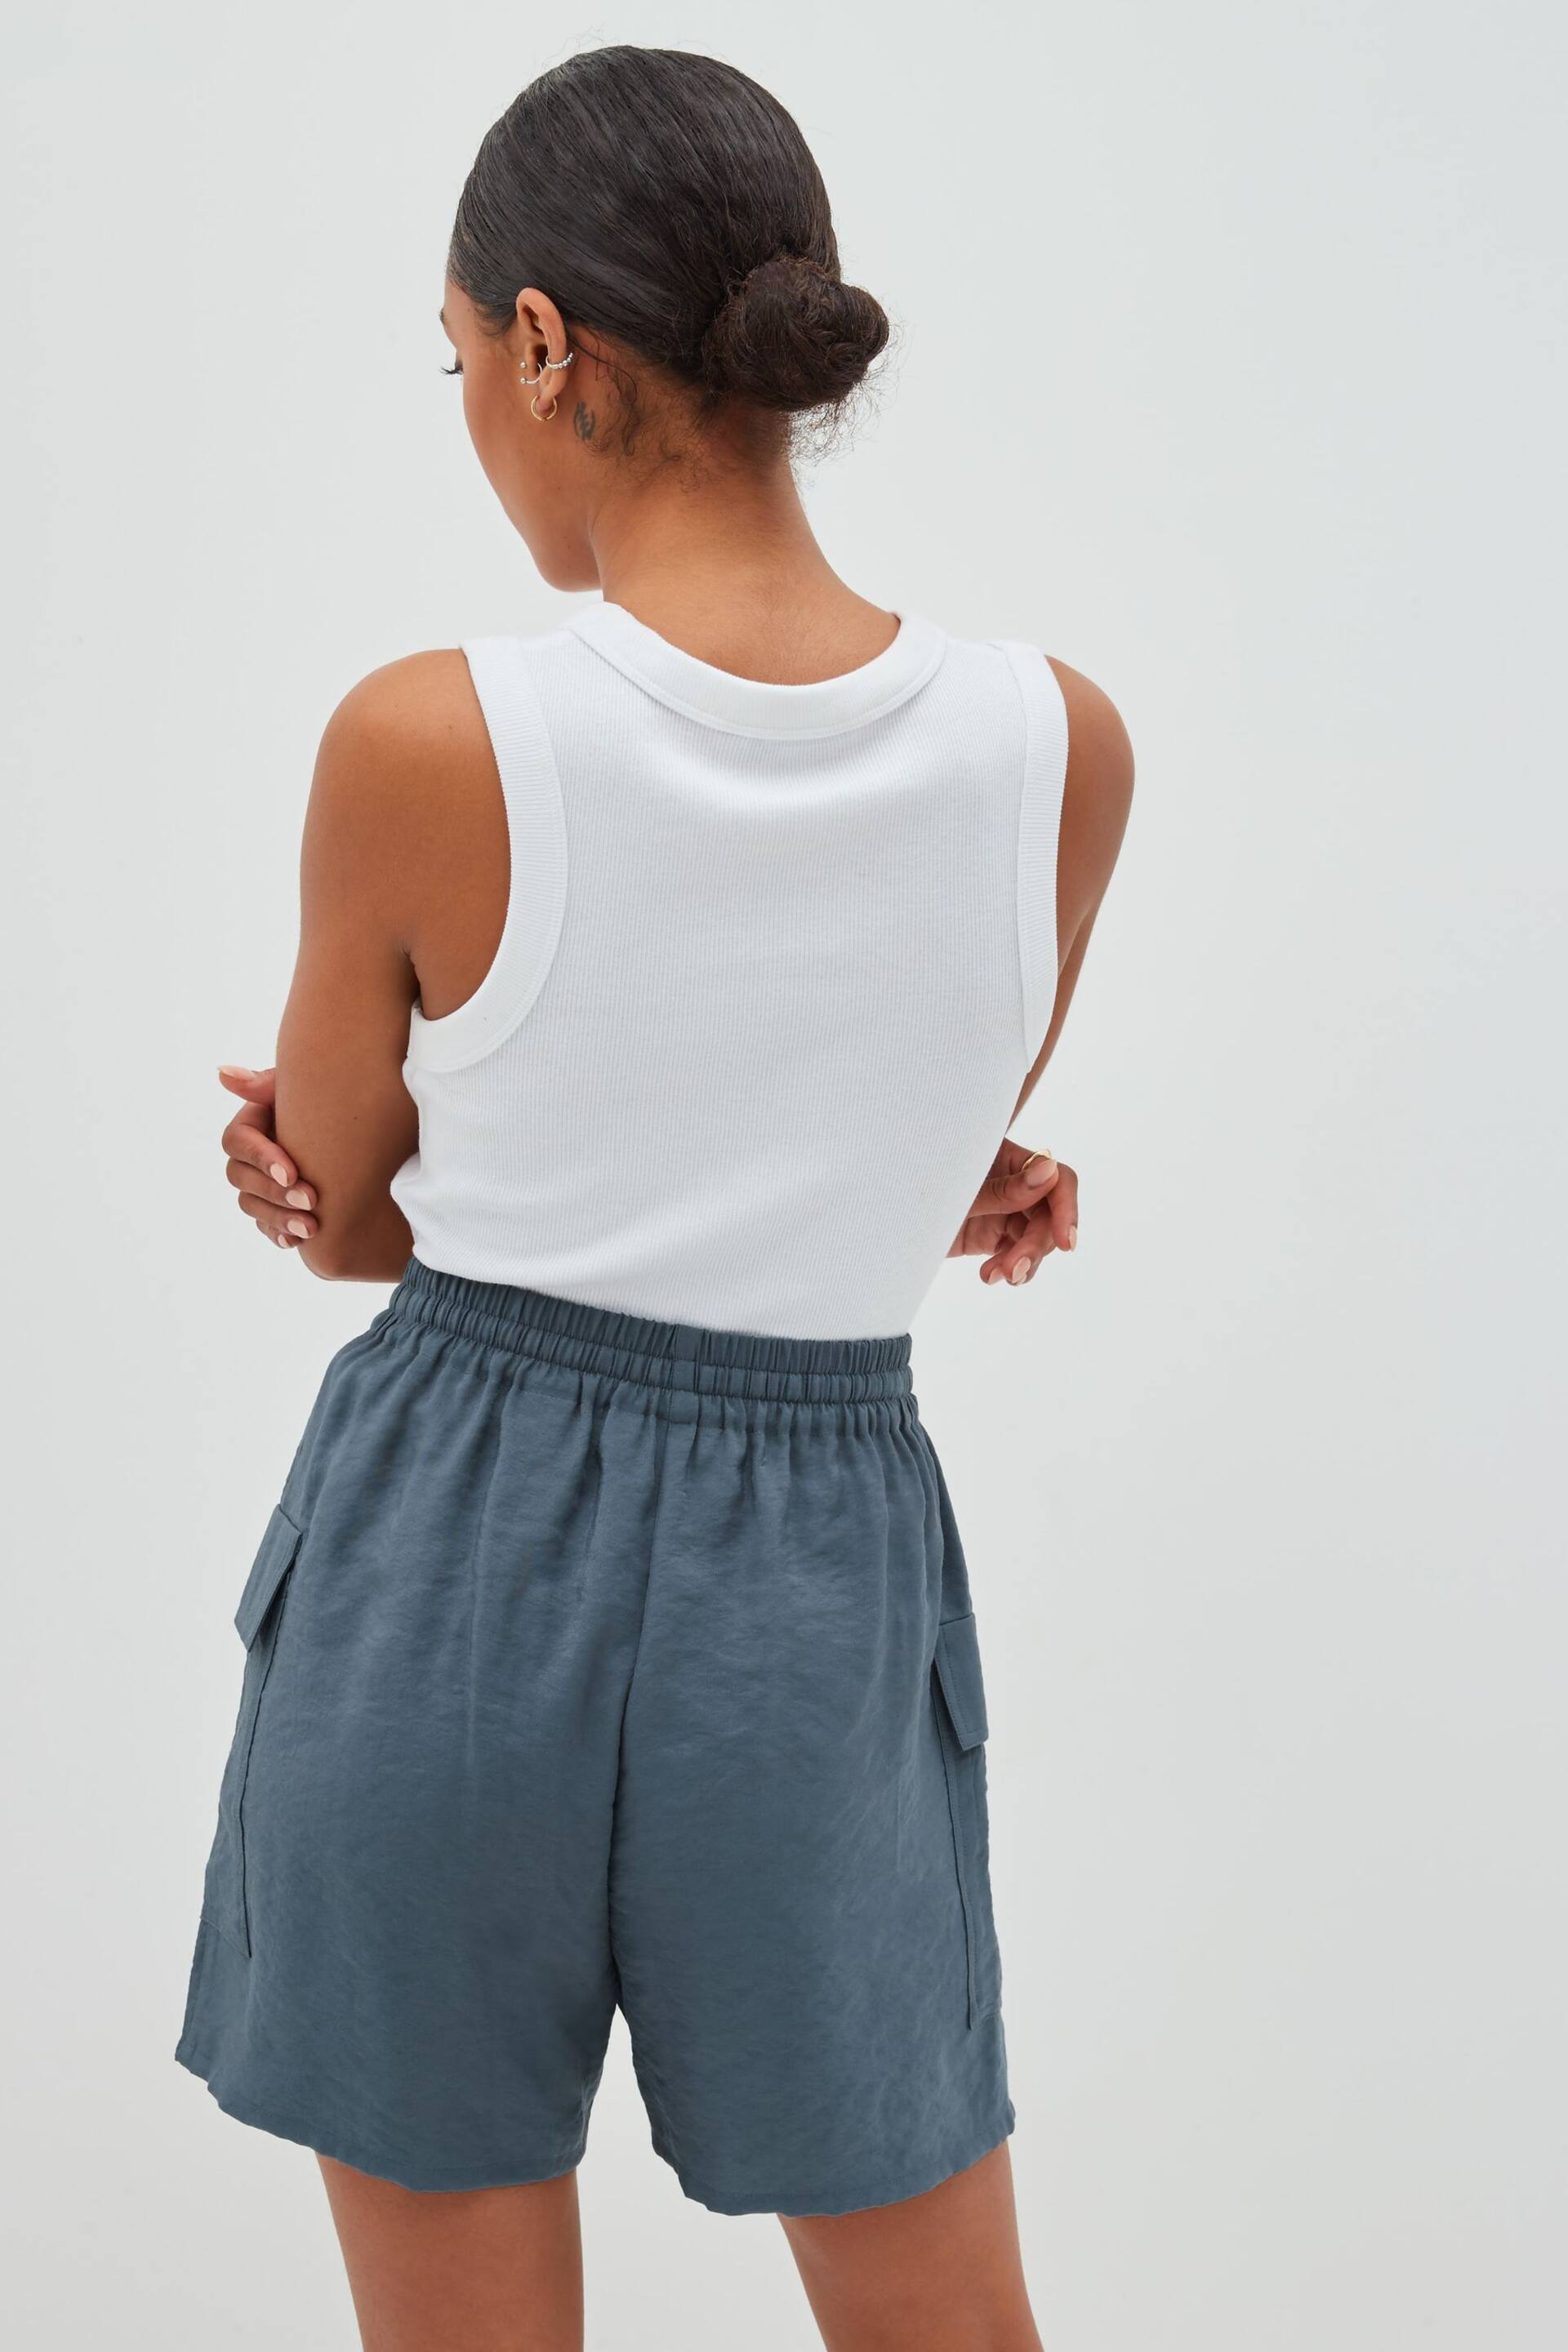 Grey Shine Utility Shorts with Pockets - Image 2 of 5